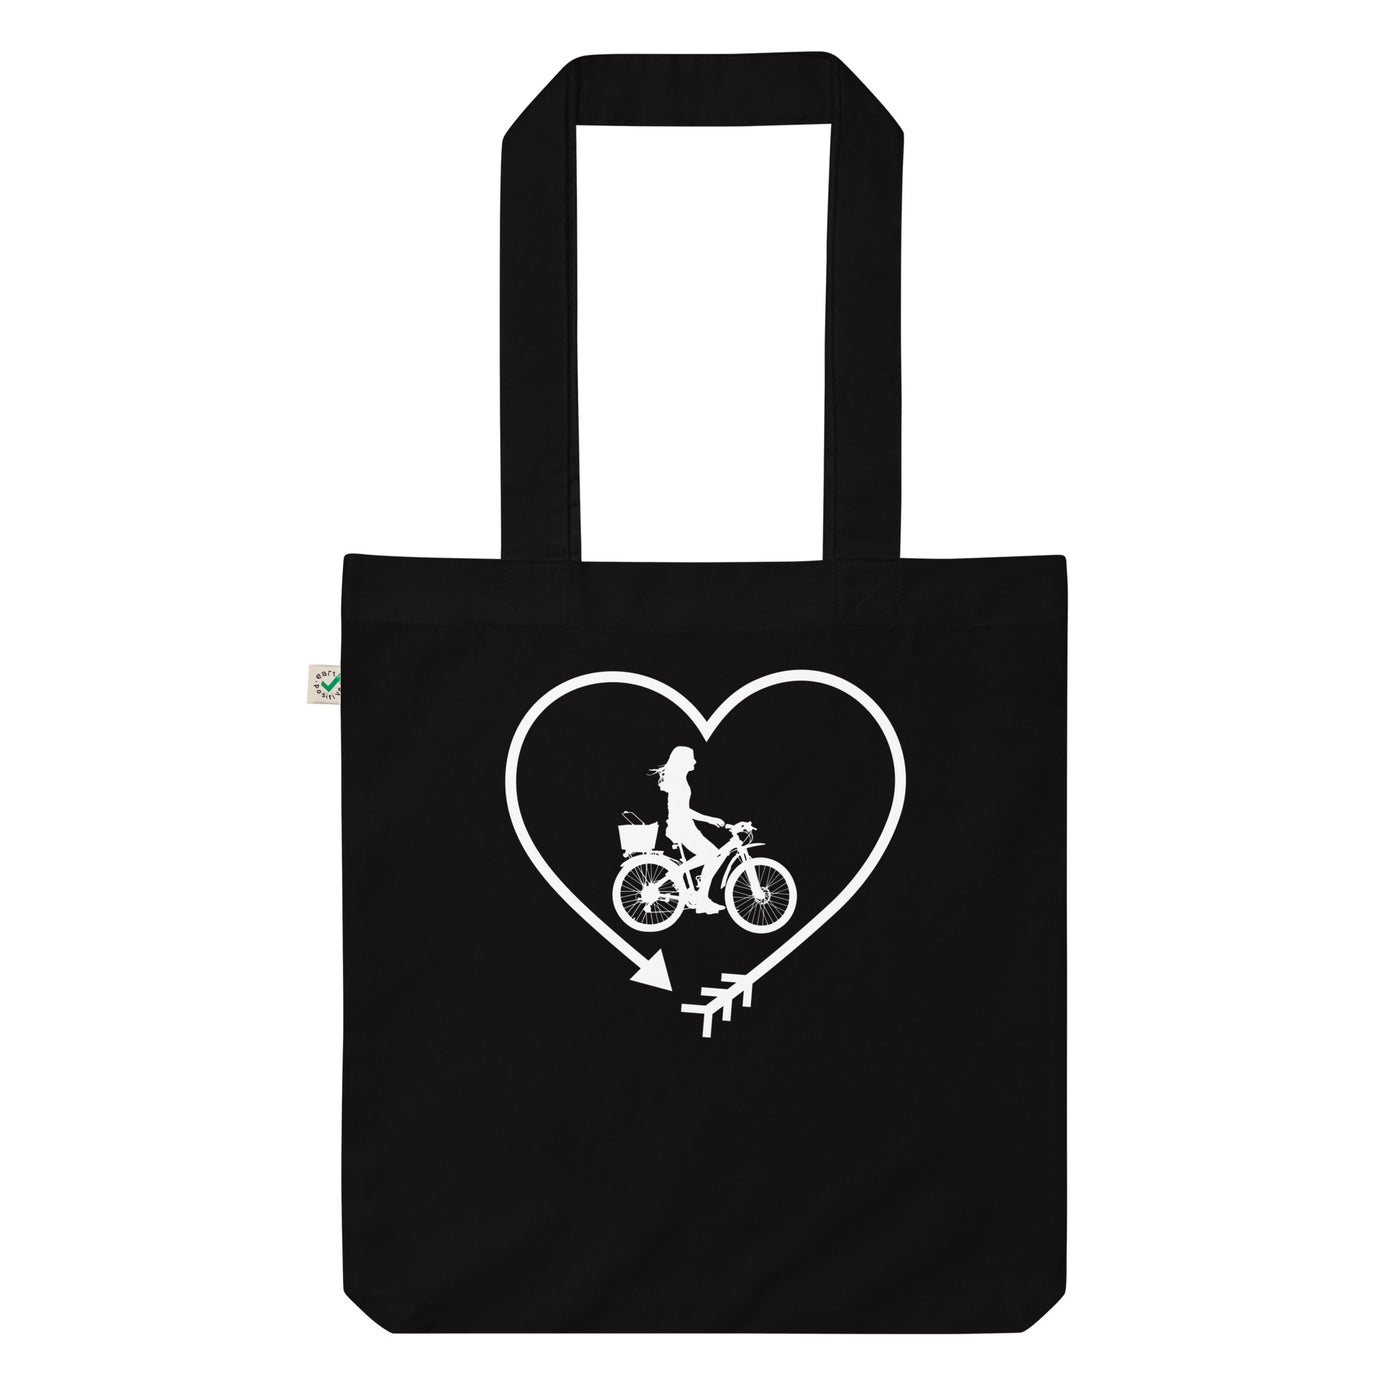 Pfeil, Herz Und Radfahren 2 - Organic Einkaufstasche fahrrad Black